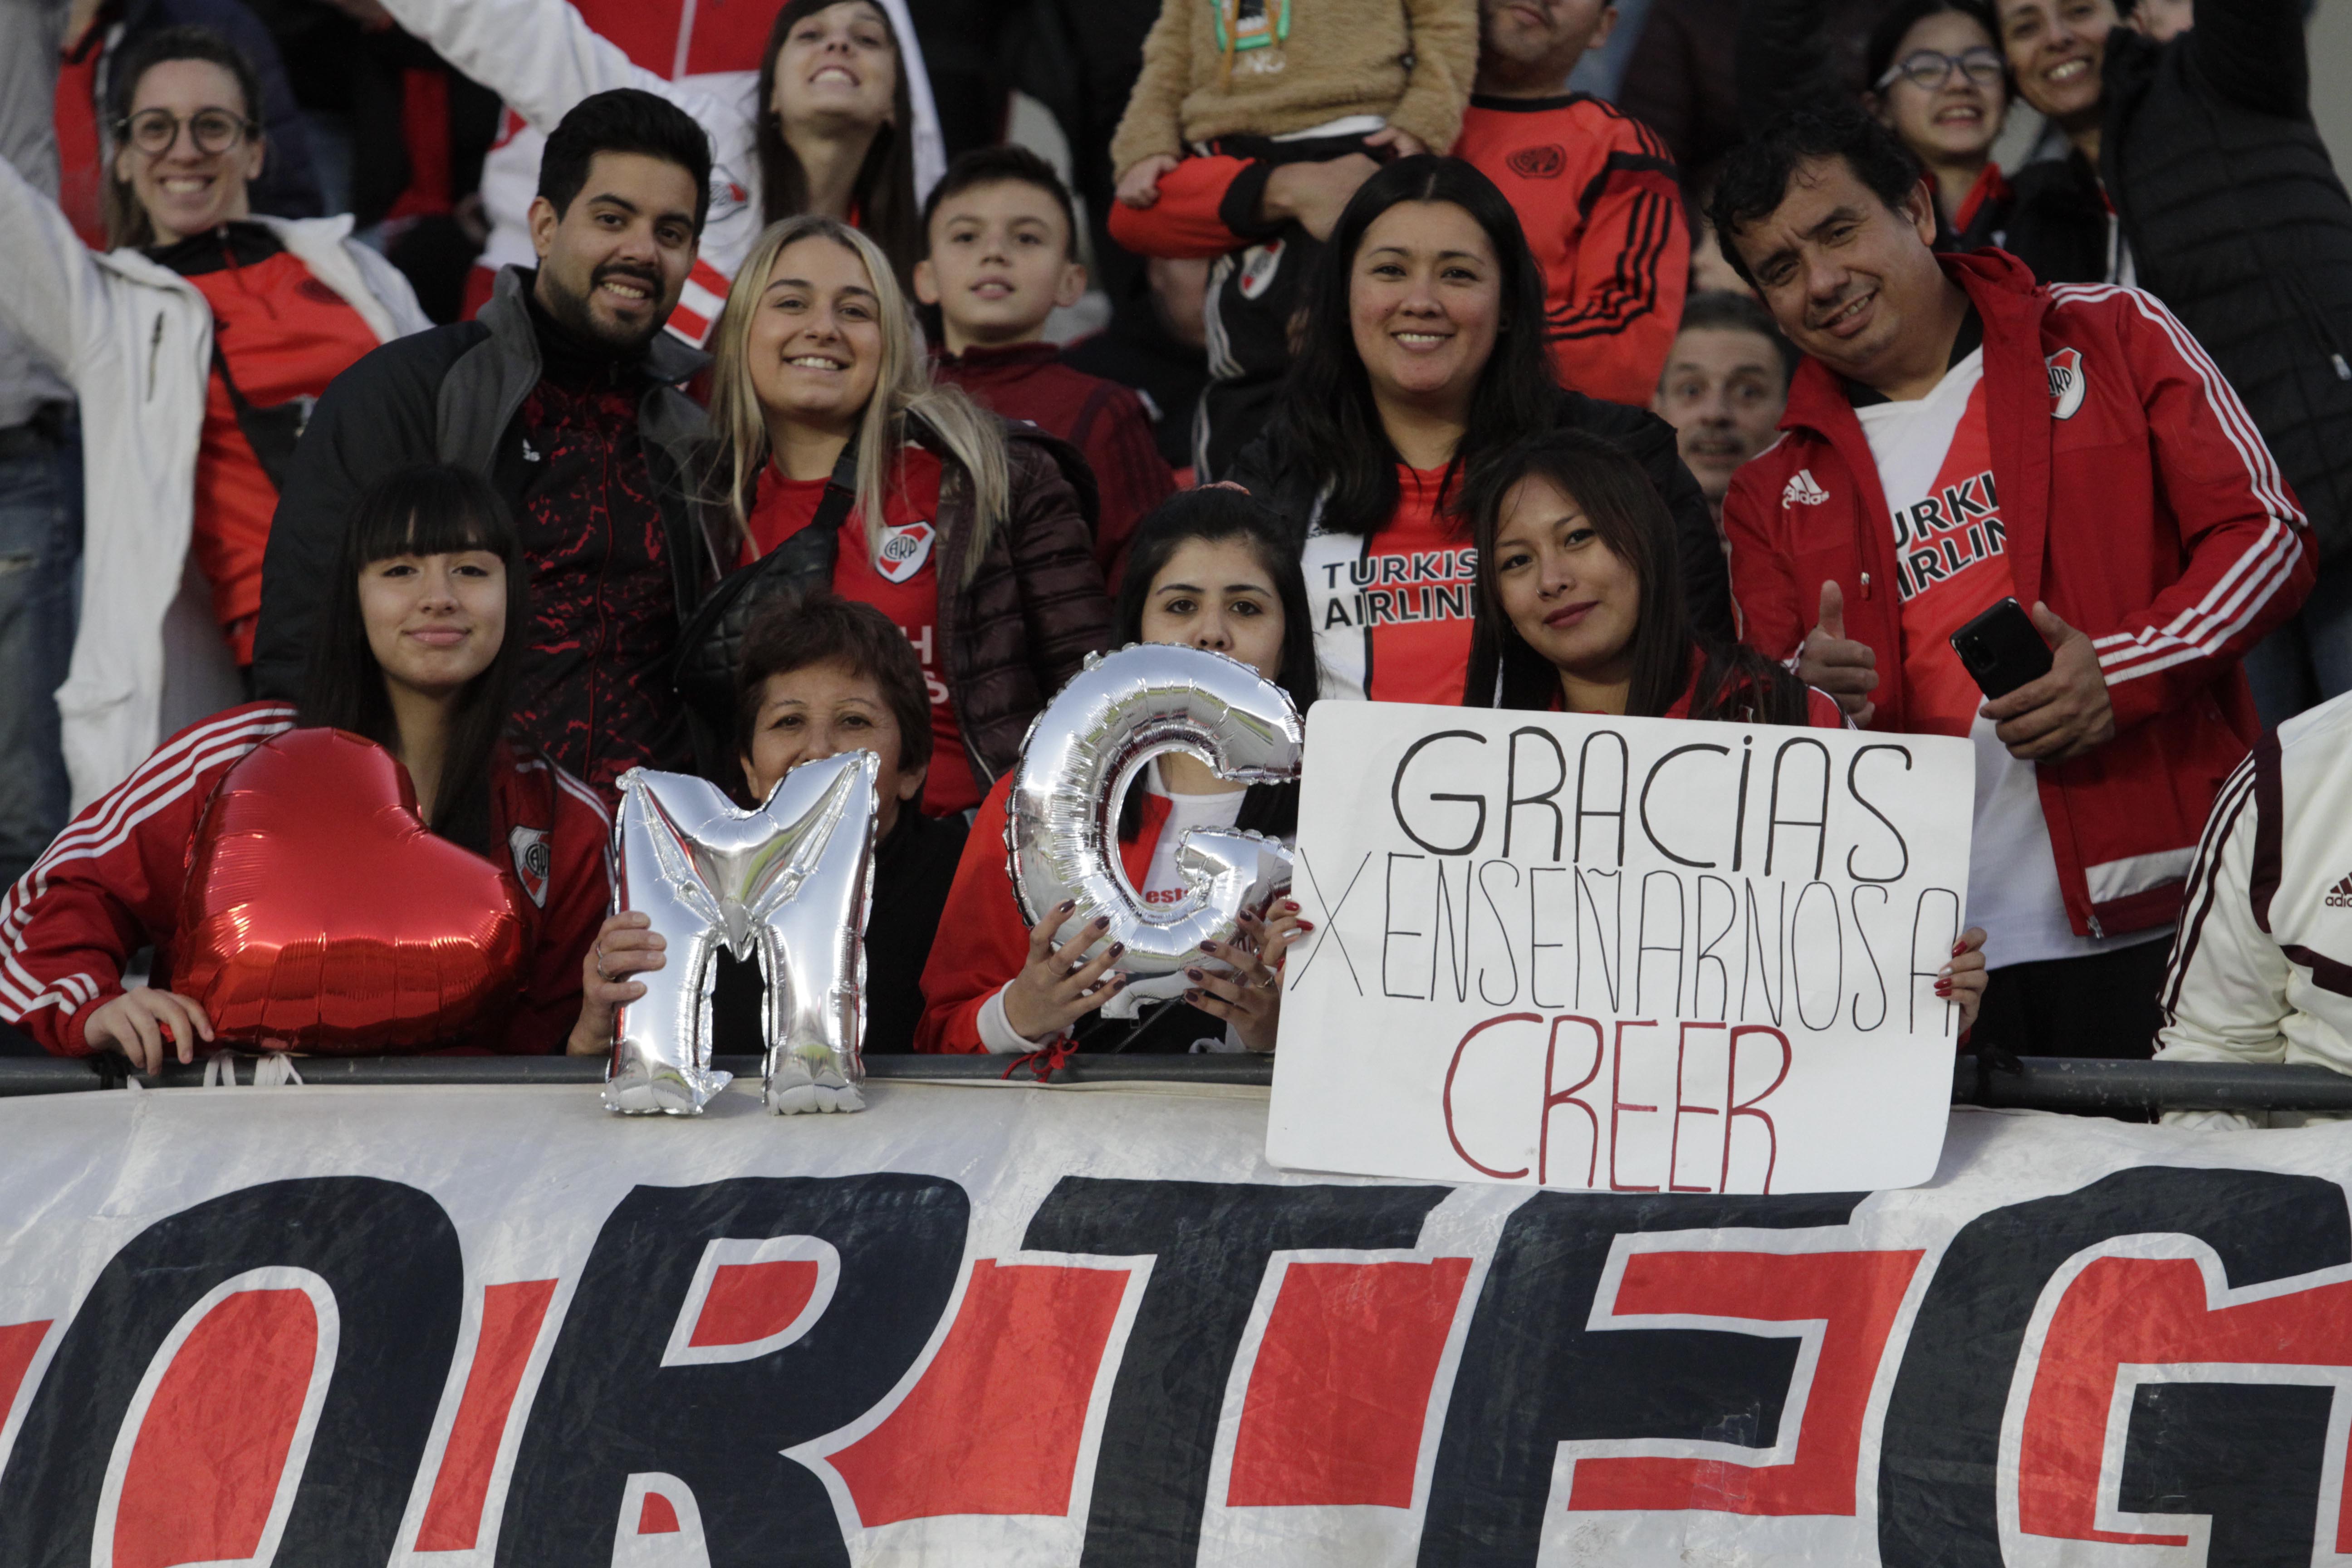 "Gracias por enseñarnos a creer", reza uno de los carteles, basado en el pedido del DT en el camino de la Libertadores 2018. Y las iniciales, "MG", con globos